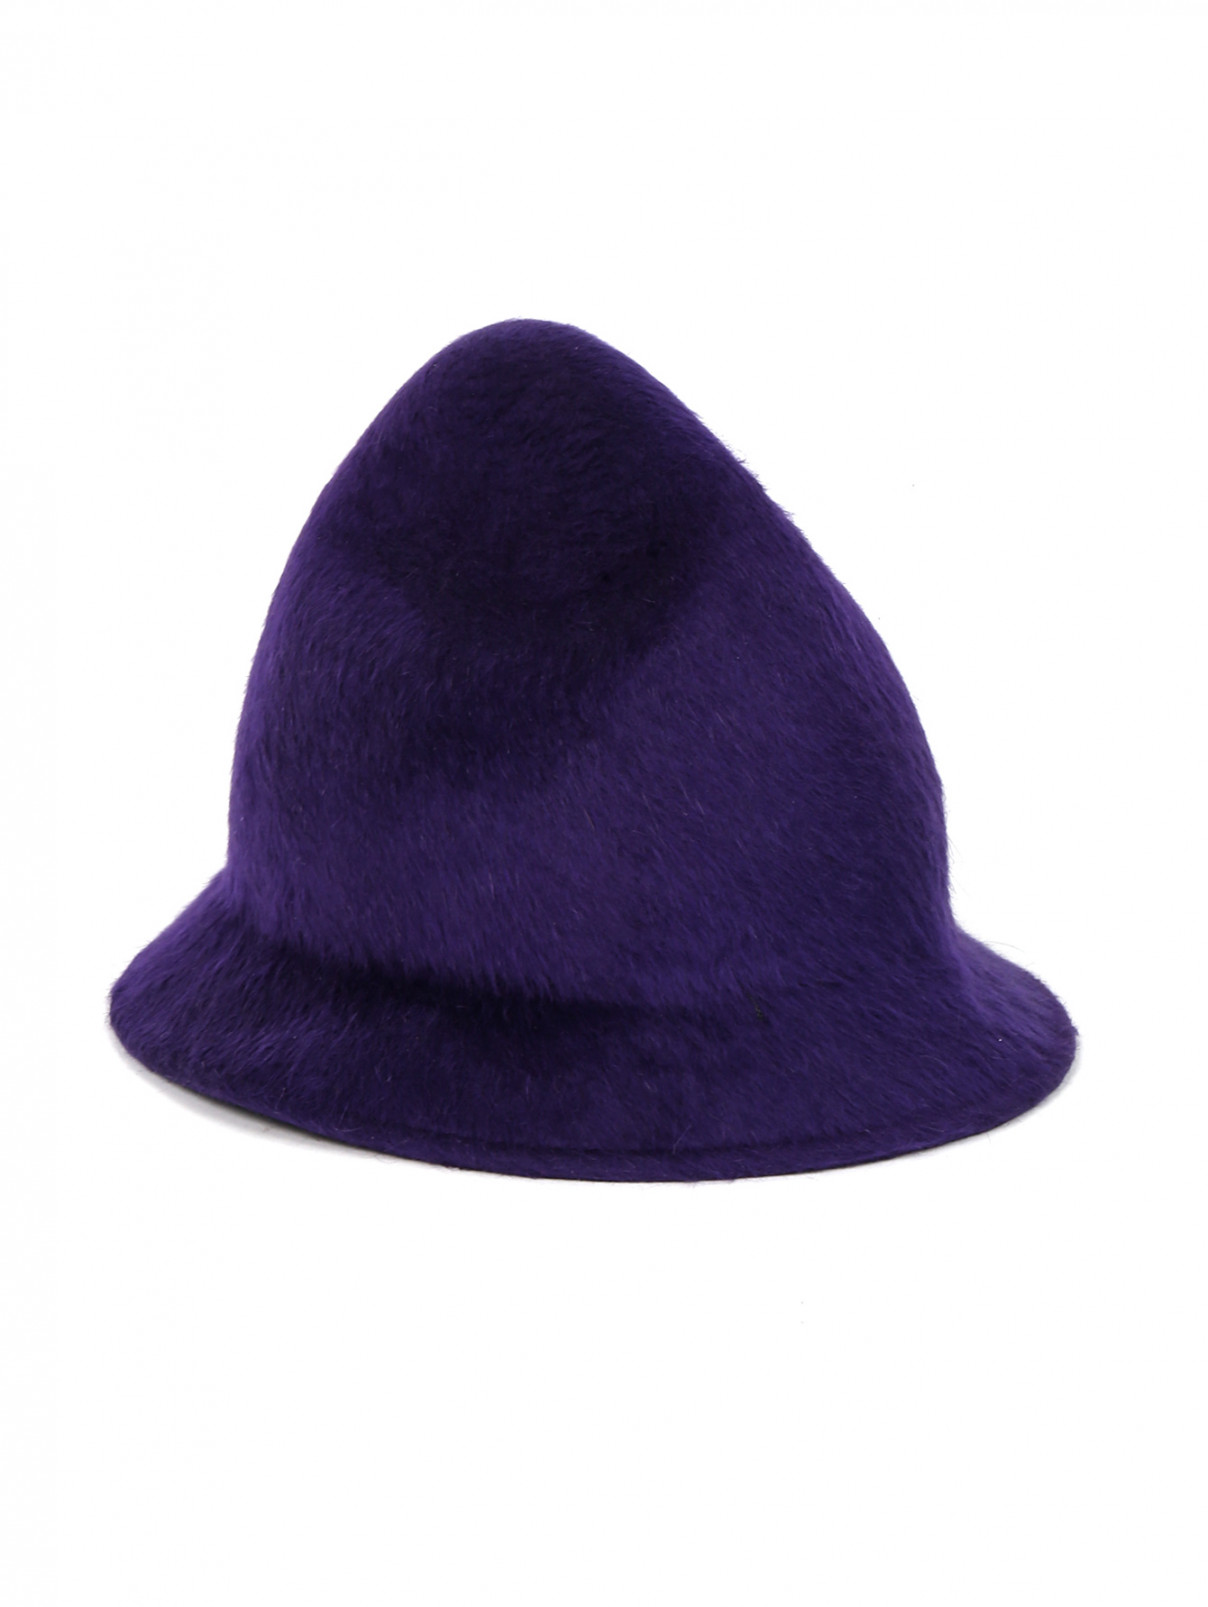 Шляпа из шерсти Philip Treacy London  –  Общий вид  – Цвет:  Фиолетовый